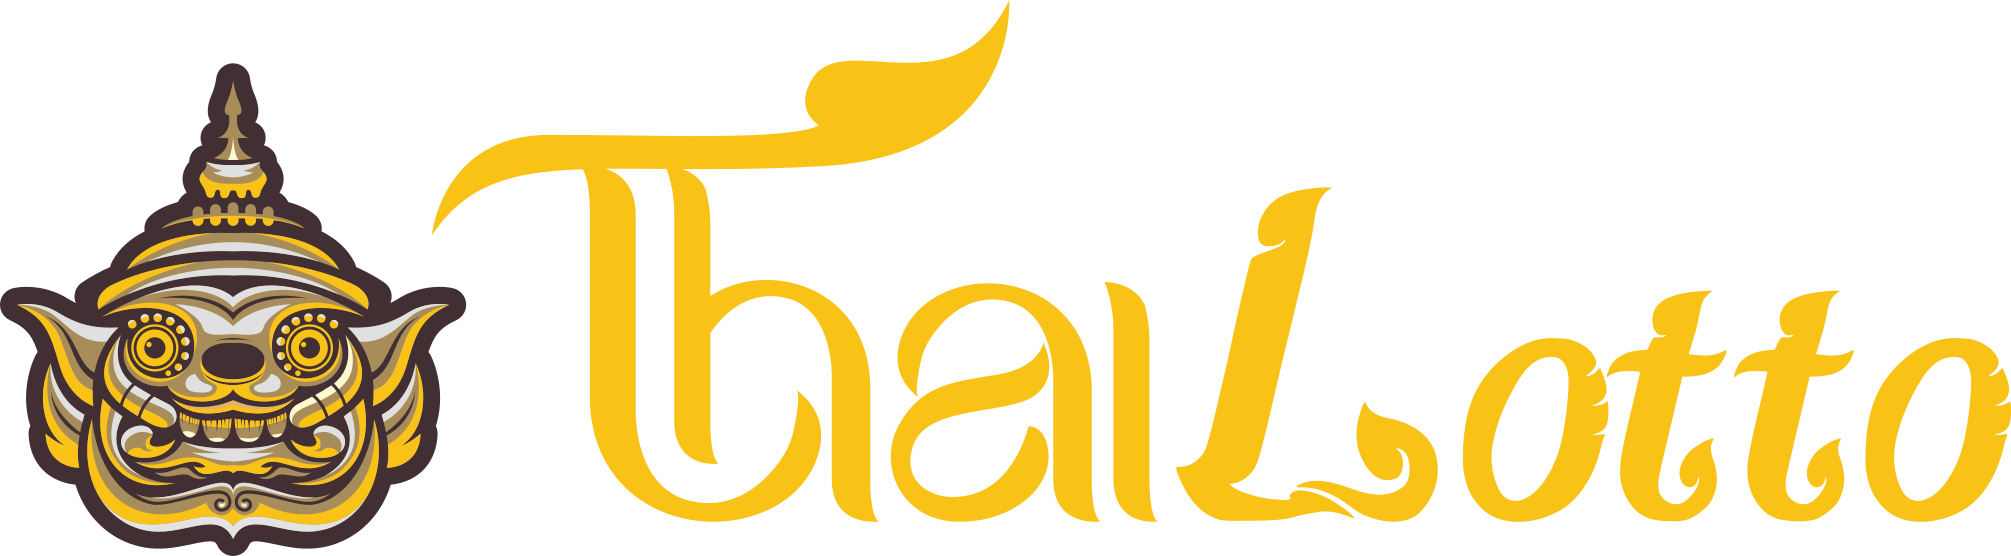 thailotto-logo